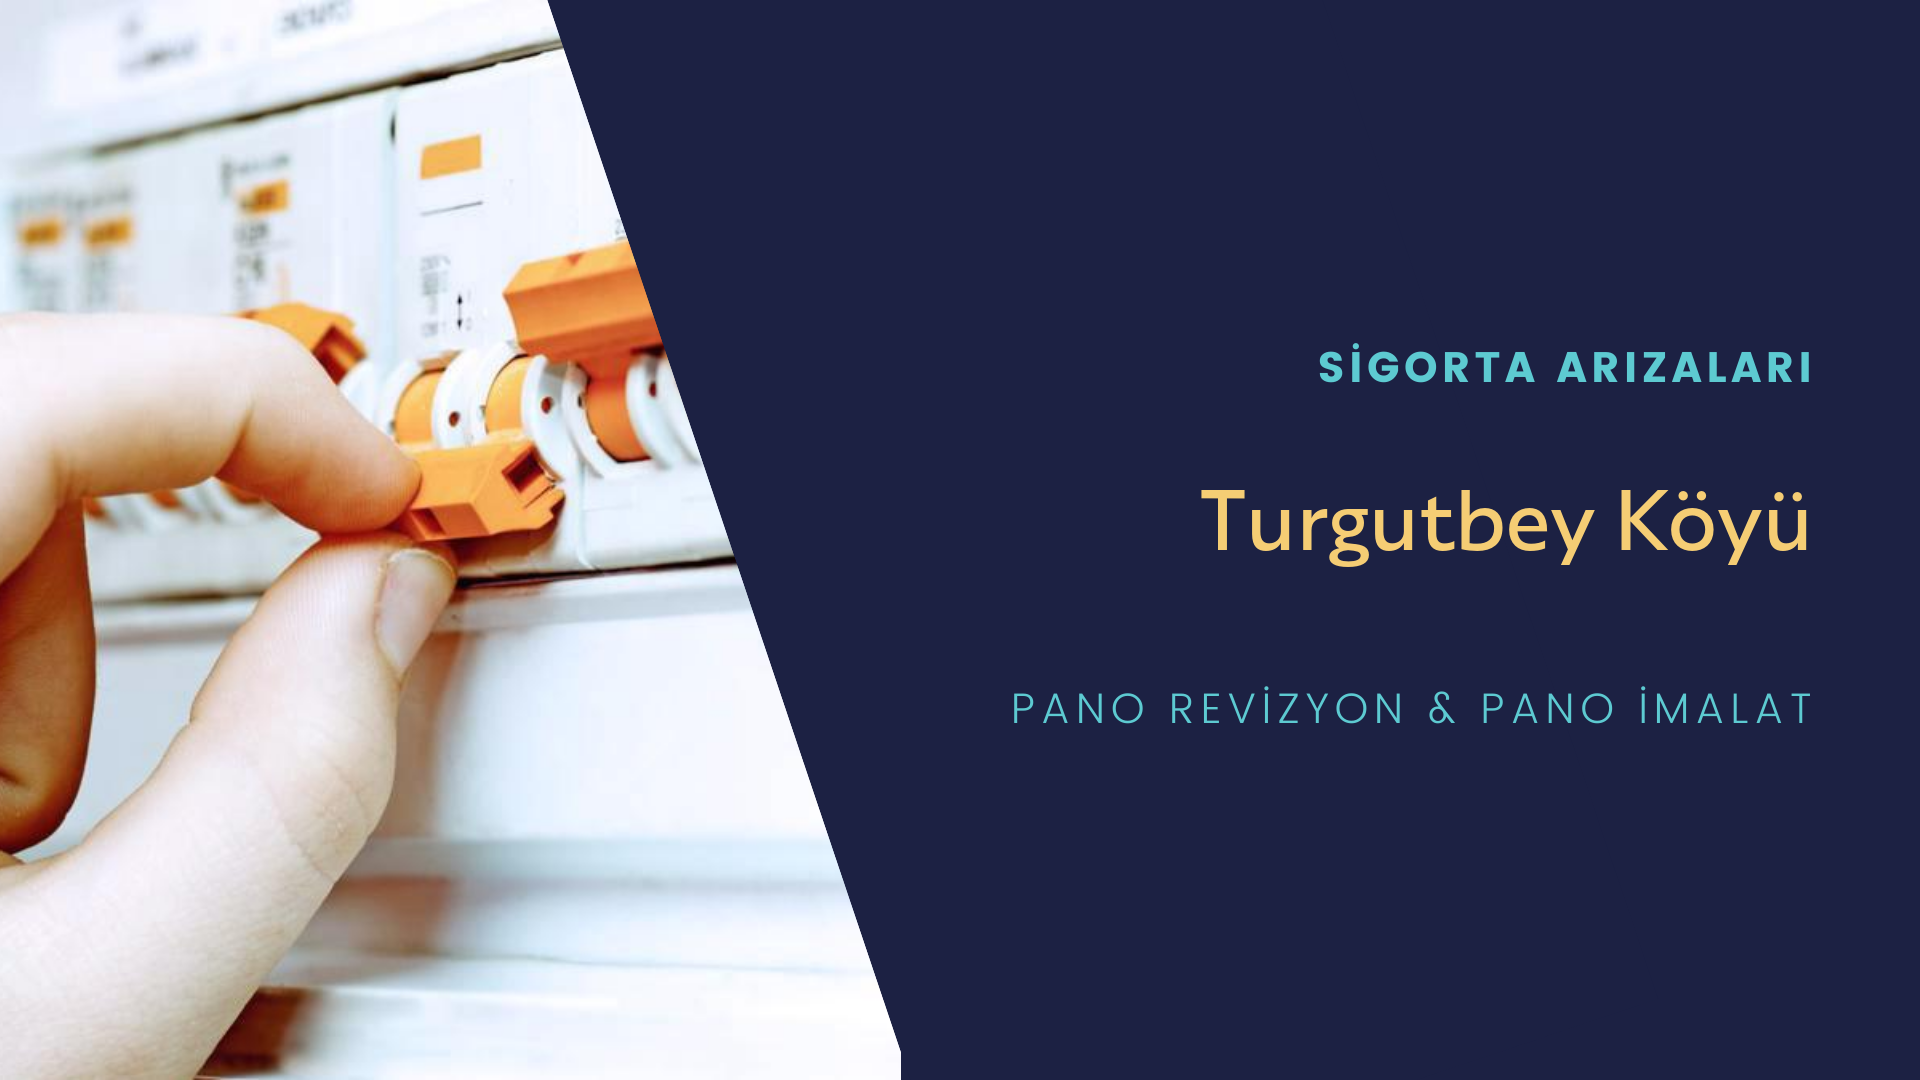 Turgutbey Köyü Sigorta Arızaları İçin Profesyonel Elektrikçi ustalarımızı dilediğiniz zaman arayabilir talepte bulunabilirsiniz.